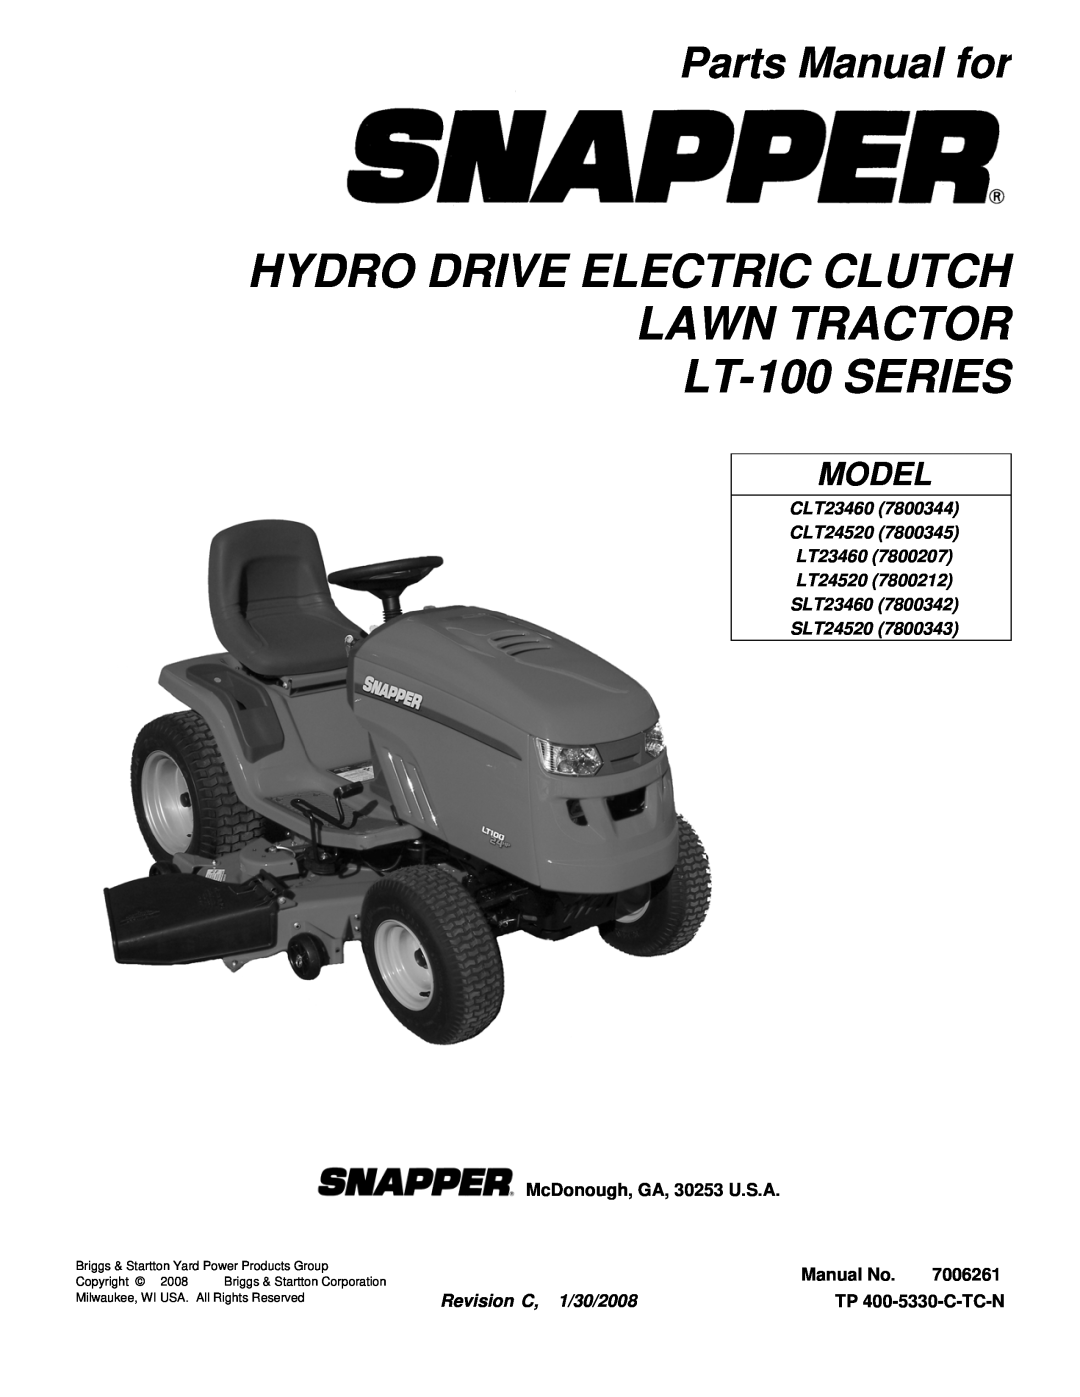 Snapper LT-100 Series manual Parts Manual for, Model, CLT23460 CLT24520 LT23460 LT24520 SLT23460, SLT24520 